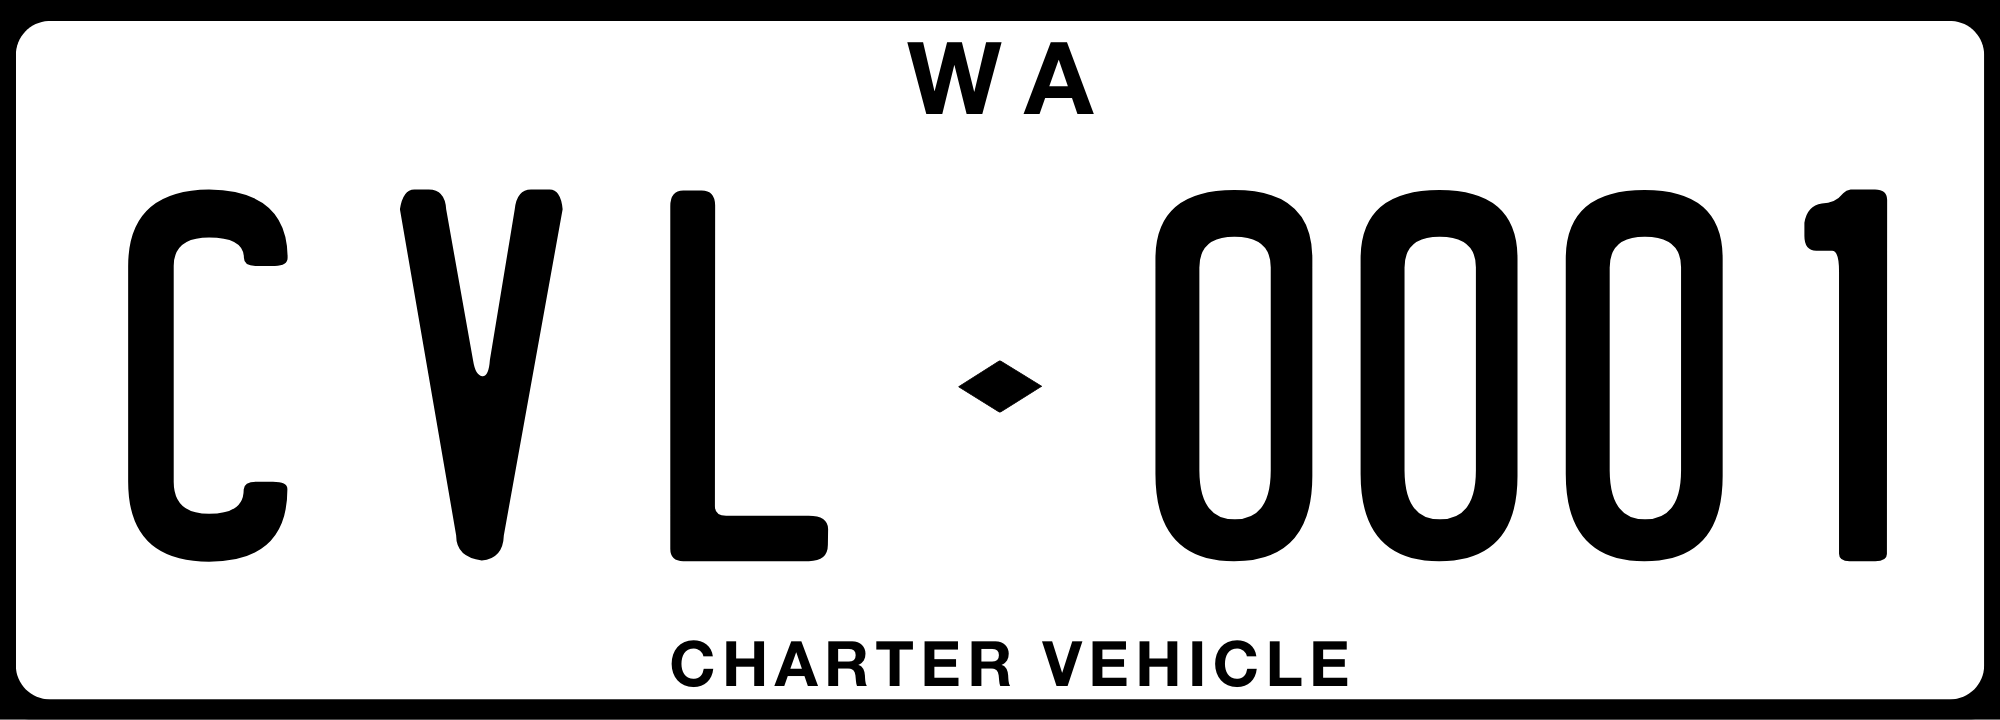 CVL number plate illustration